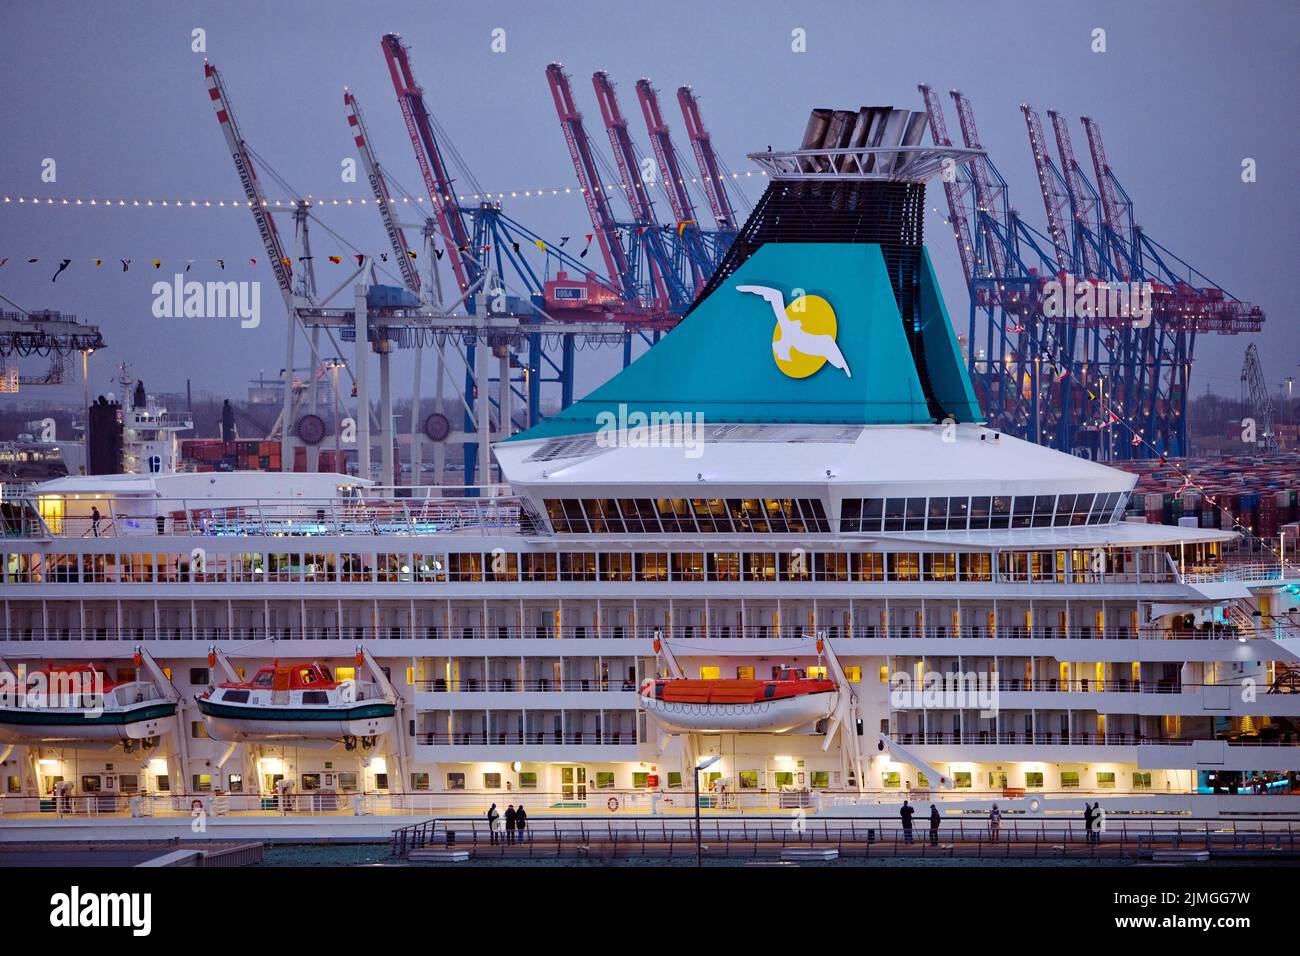 Bateau de croisière Artania, Hamburg Cruise Centre Altona avec les grues du port, Hambourg, Allemagne, Europe Banque D'Images